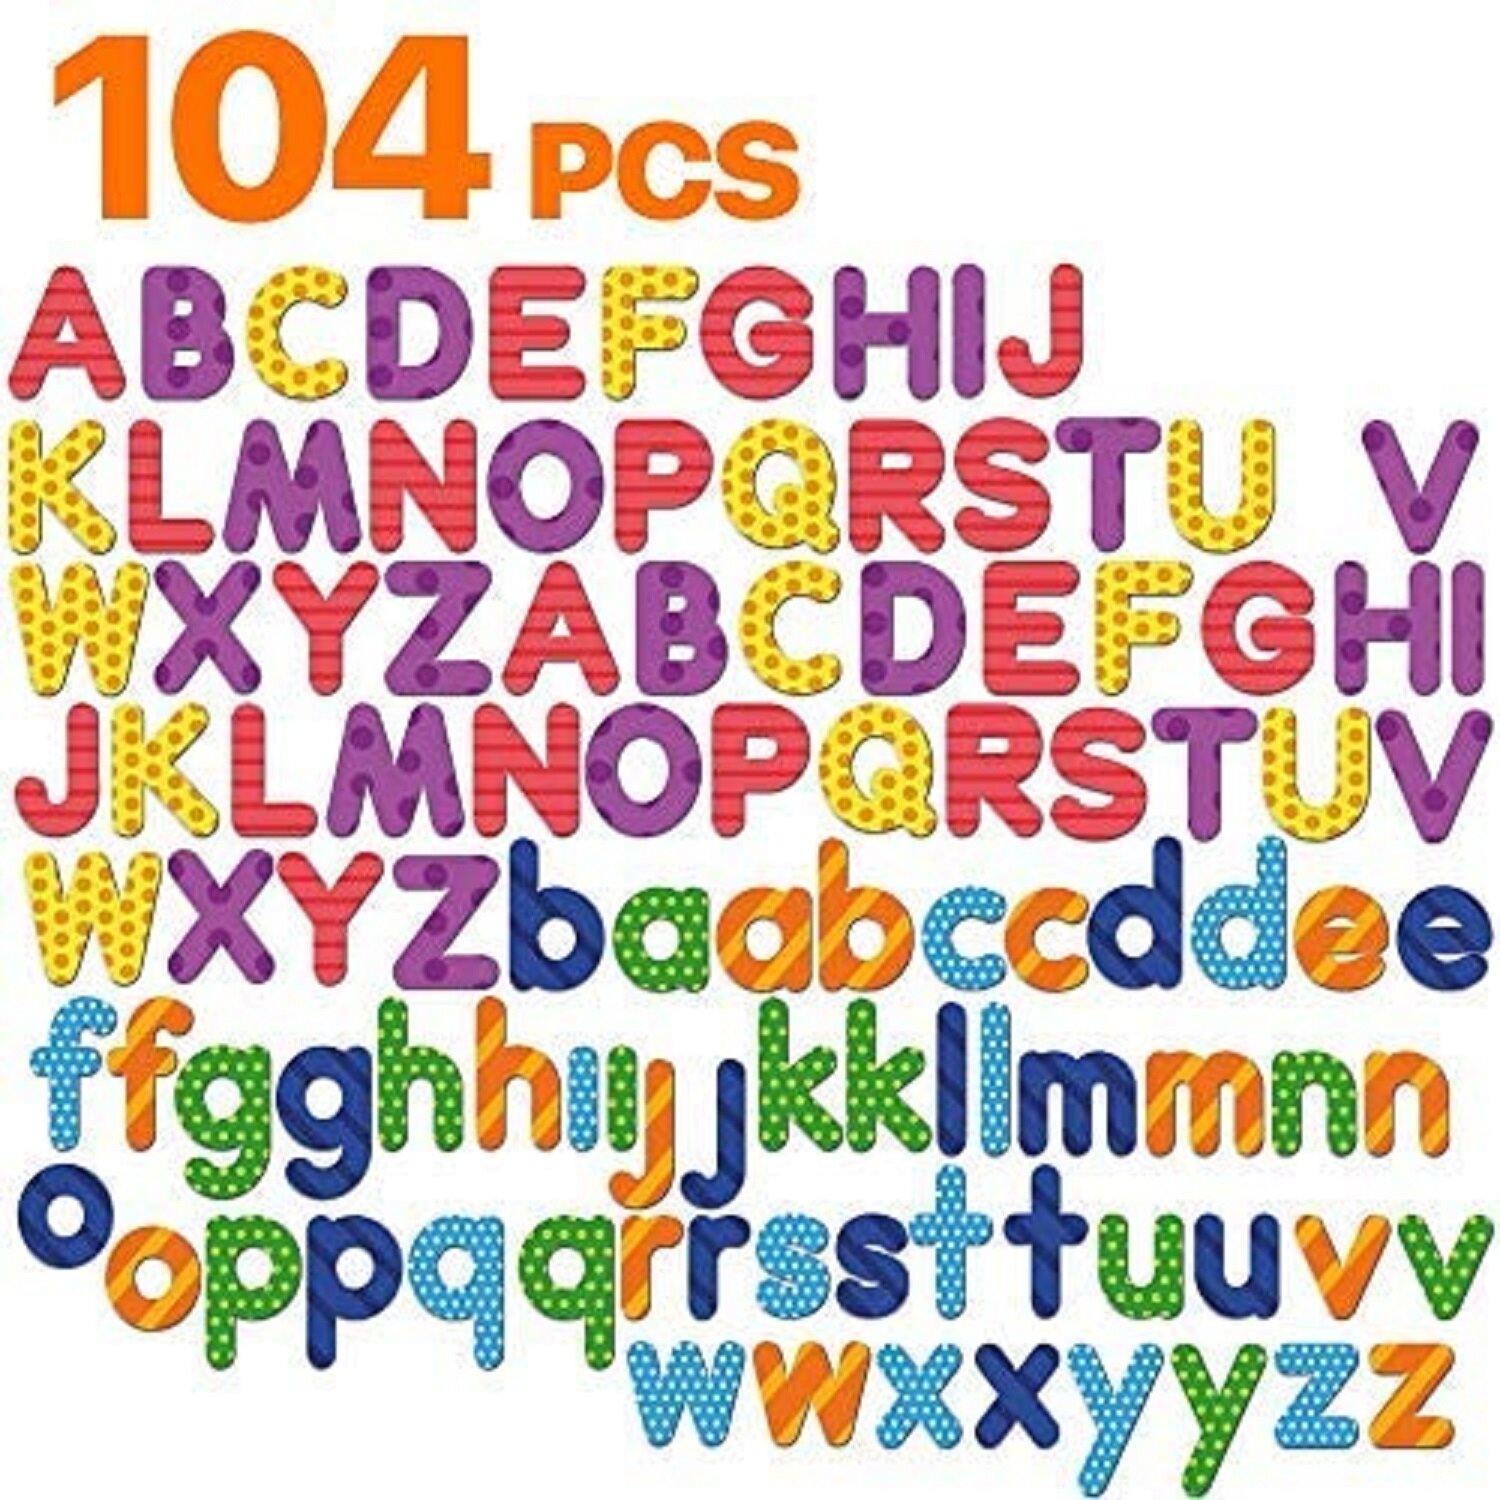 52 Pcs Magnetic Wooden Alphabet Letters ABC Upper Case Fridge Magnets 